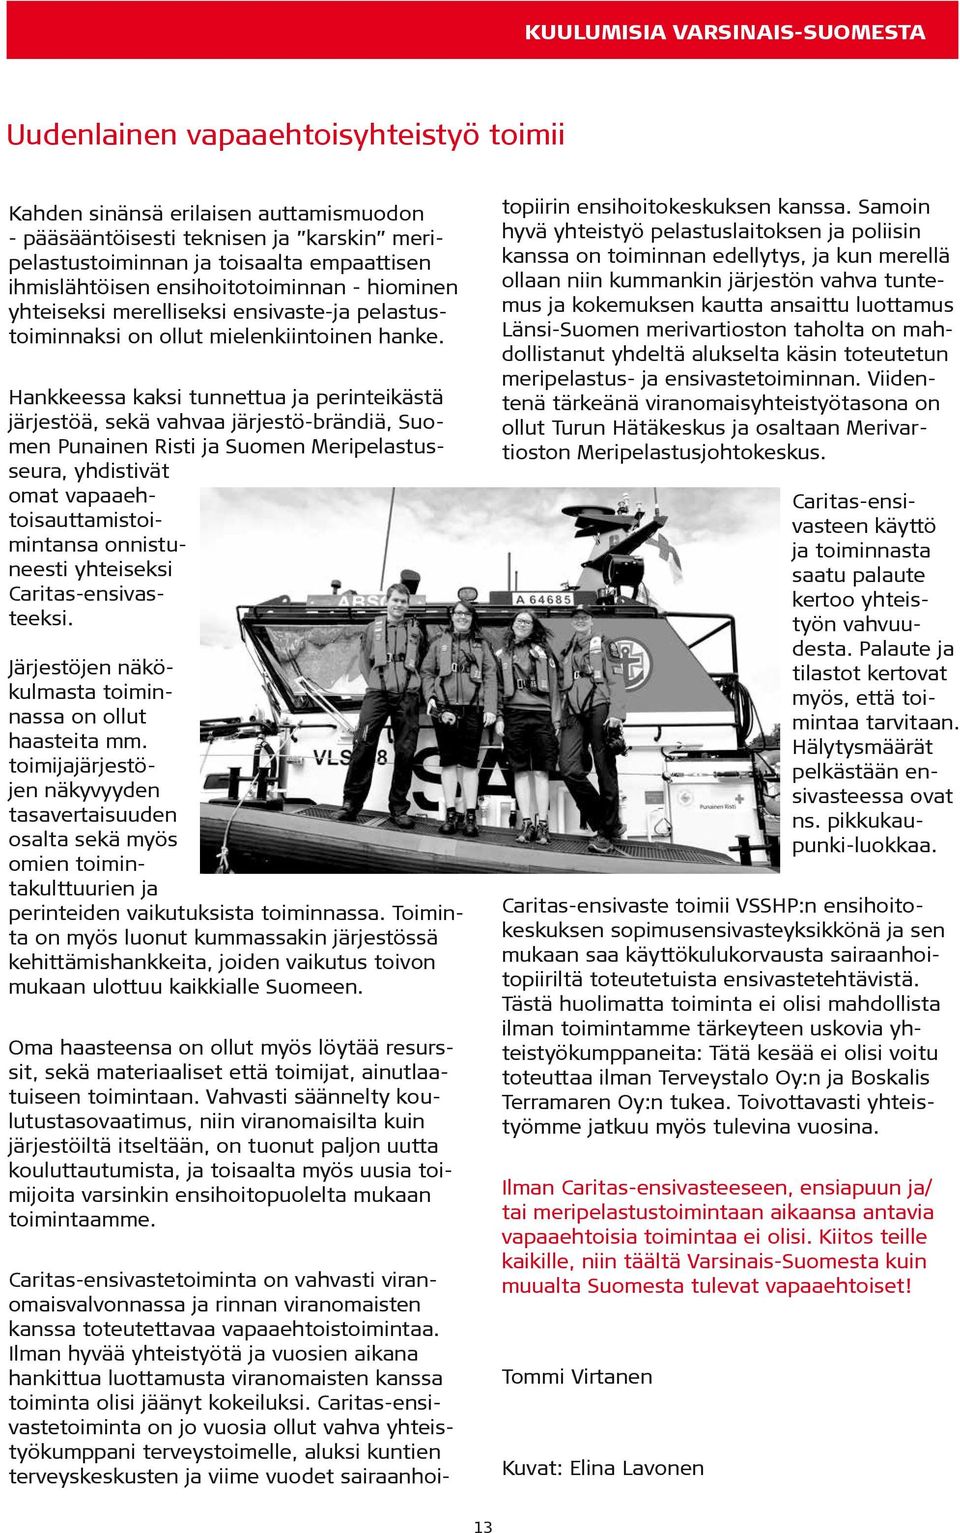 Hankkeessa kaksi tunnettua ja perinteikästä järjestöä, sekä vahvaa järjestö-brändiä, Suomen Punainen Risti ja Suomen Meripelastusseura, yhdistivät omat vapaaehtoisauttamistoimintansa onnistuneesti